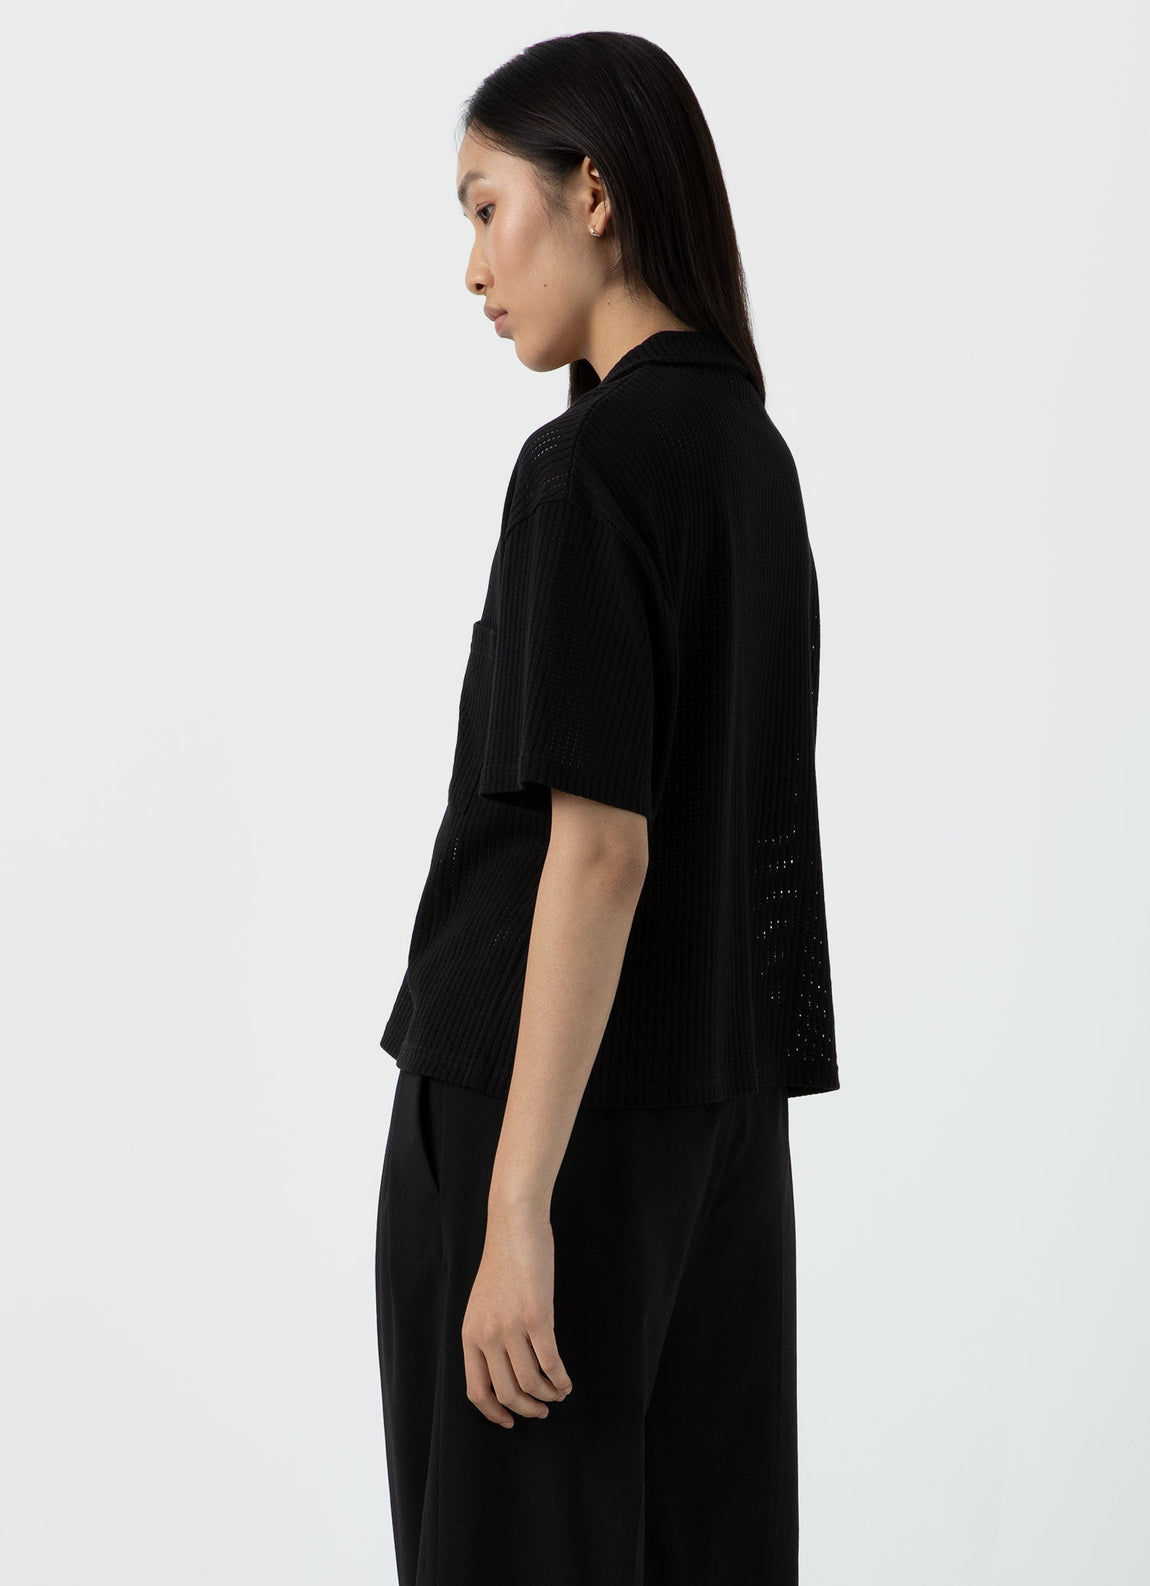 Women's Lace Mesh Shirt in Black